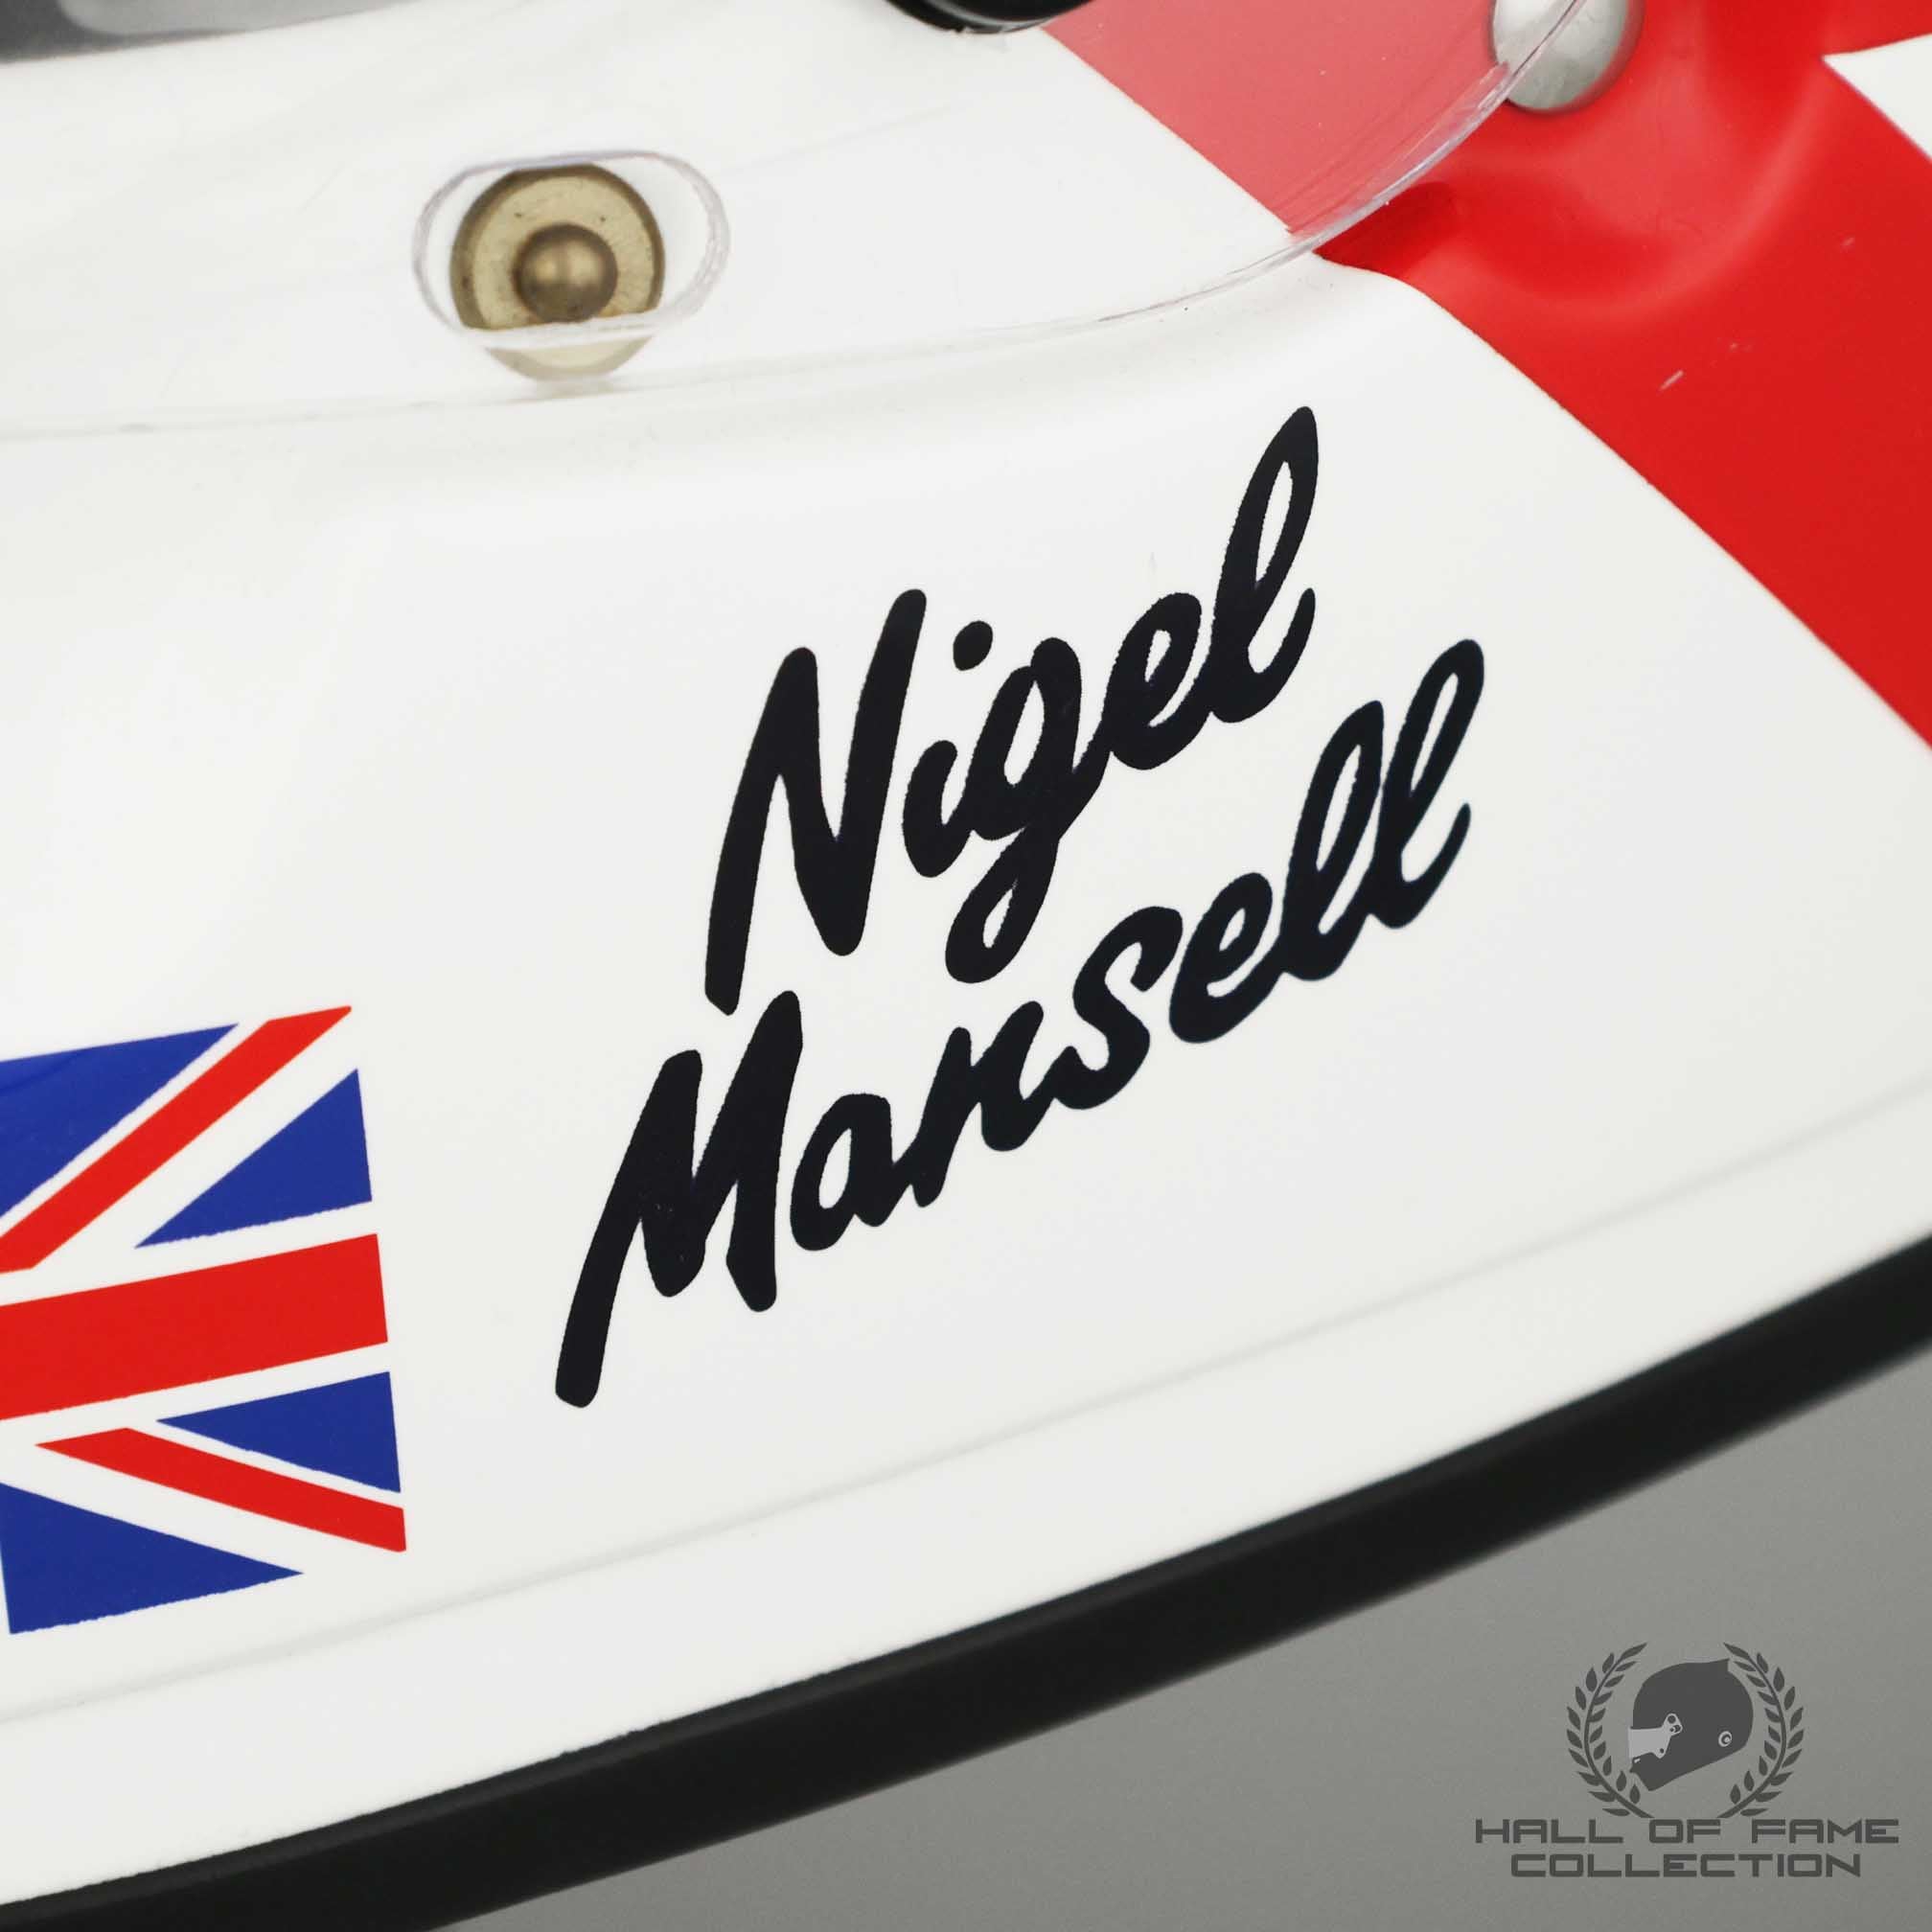 1993 Nigel Mansell Signed Replica Newman Haas Racing IndyCar Helmet